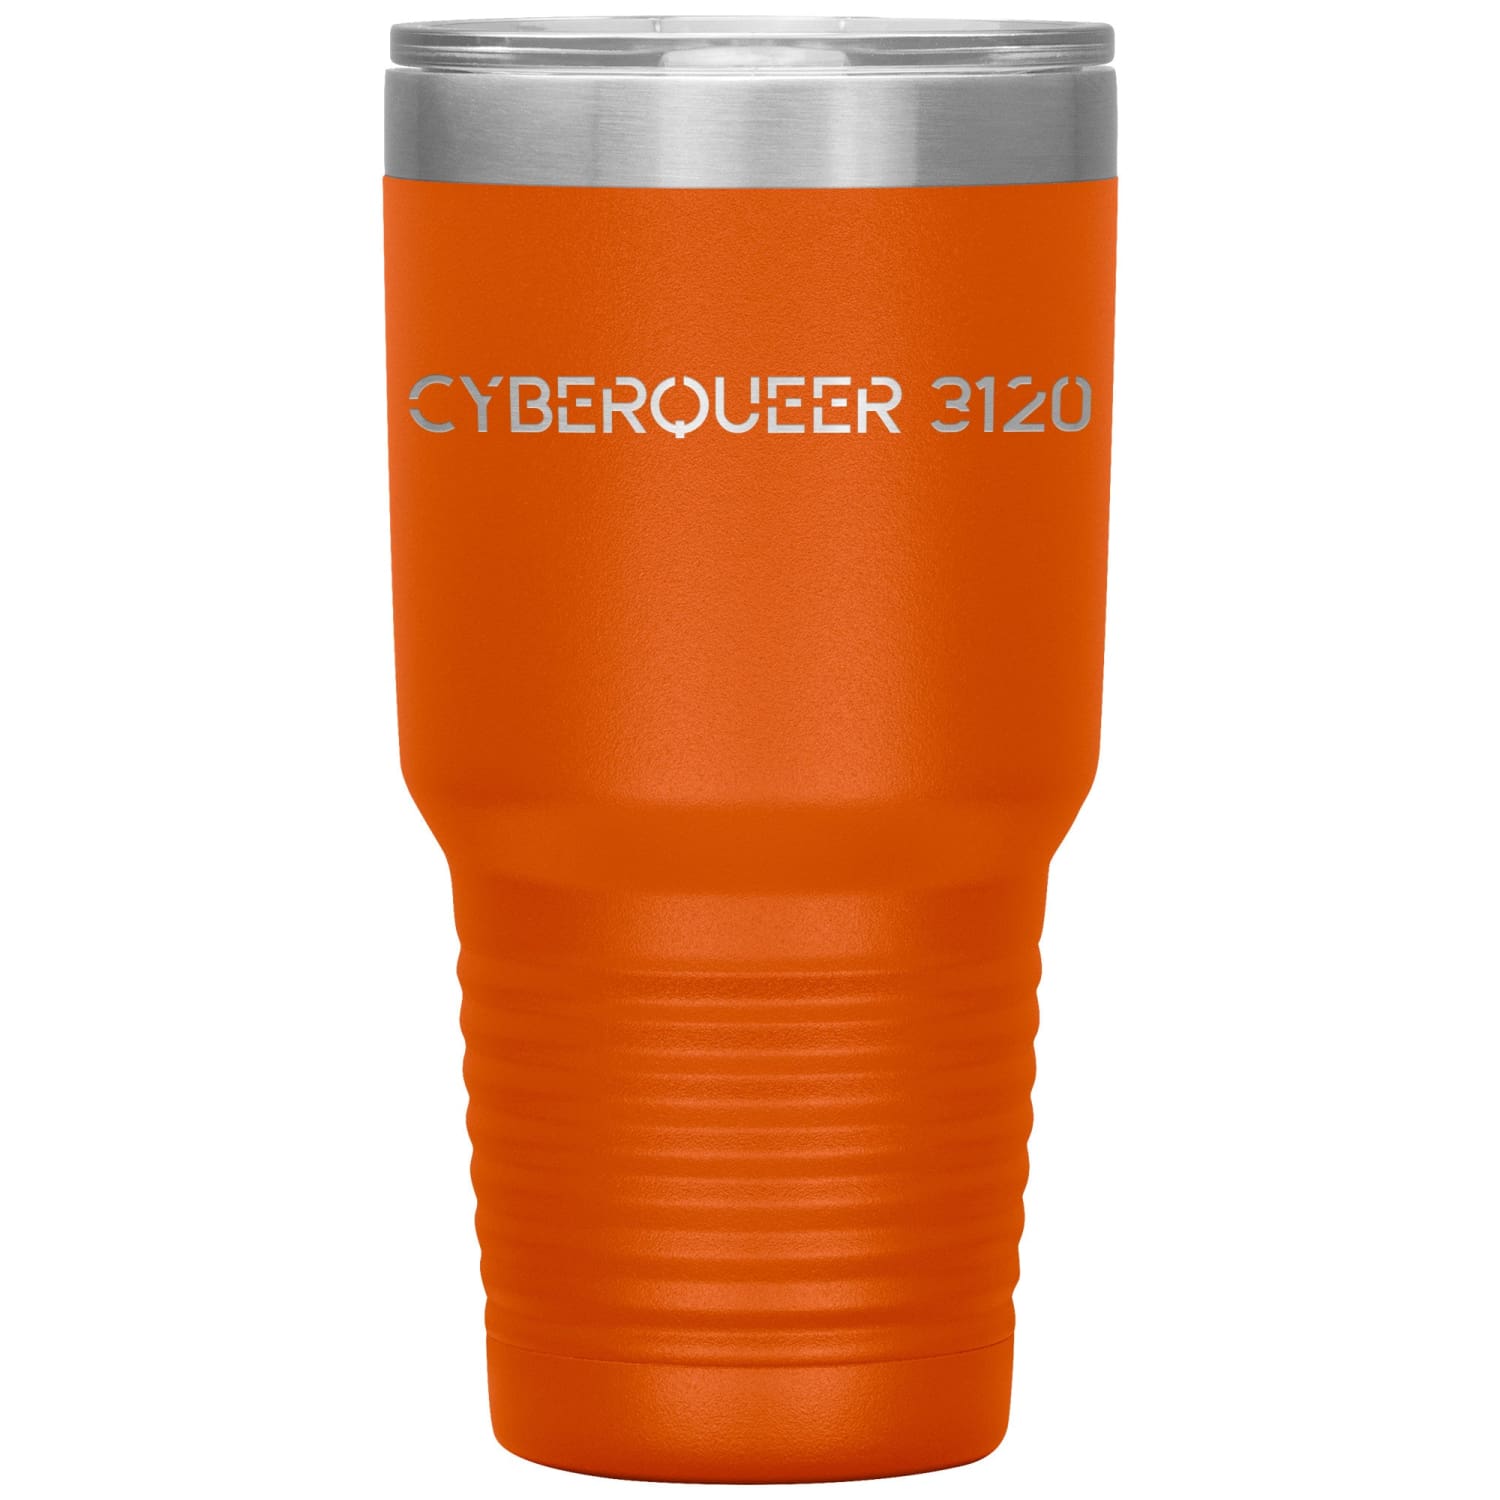 Cyberqueer 3120 30oz Vacuum Tumbler - Orange - Tumblers